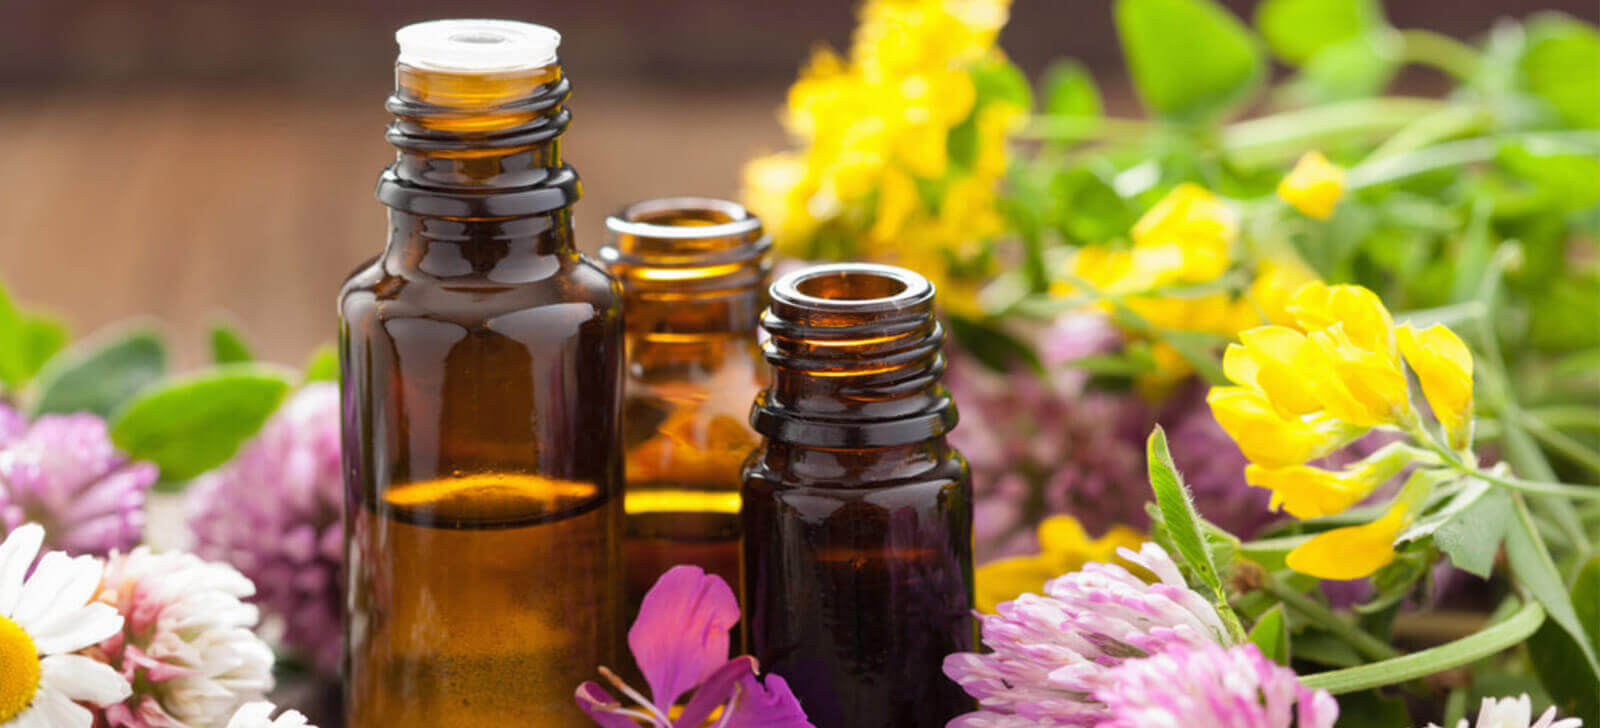 Aromaterapia: o que é, benefícios, indicações e possíveis efeitos colaterais